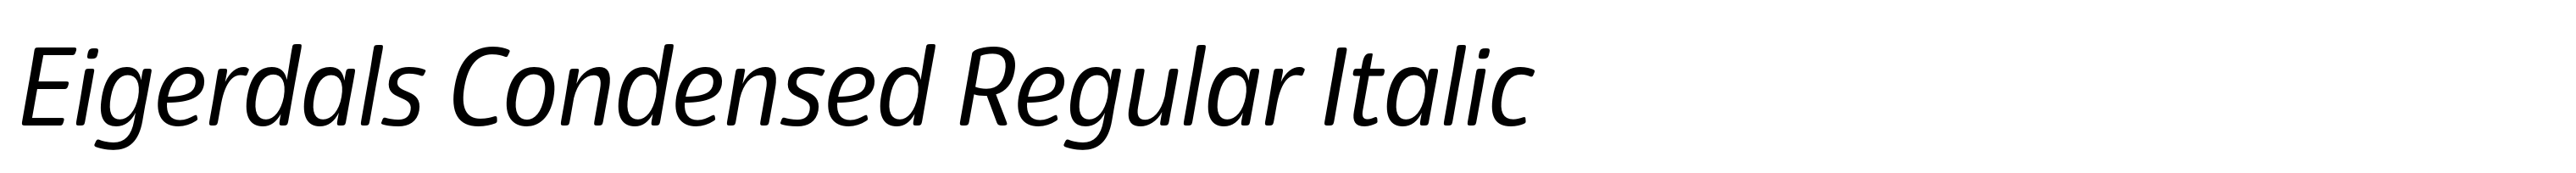 Eigerdals Condensed Regular Italic